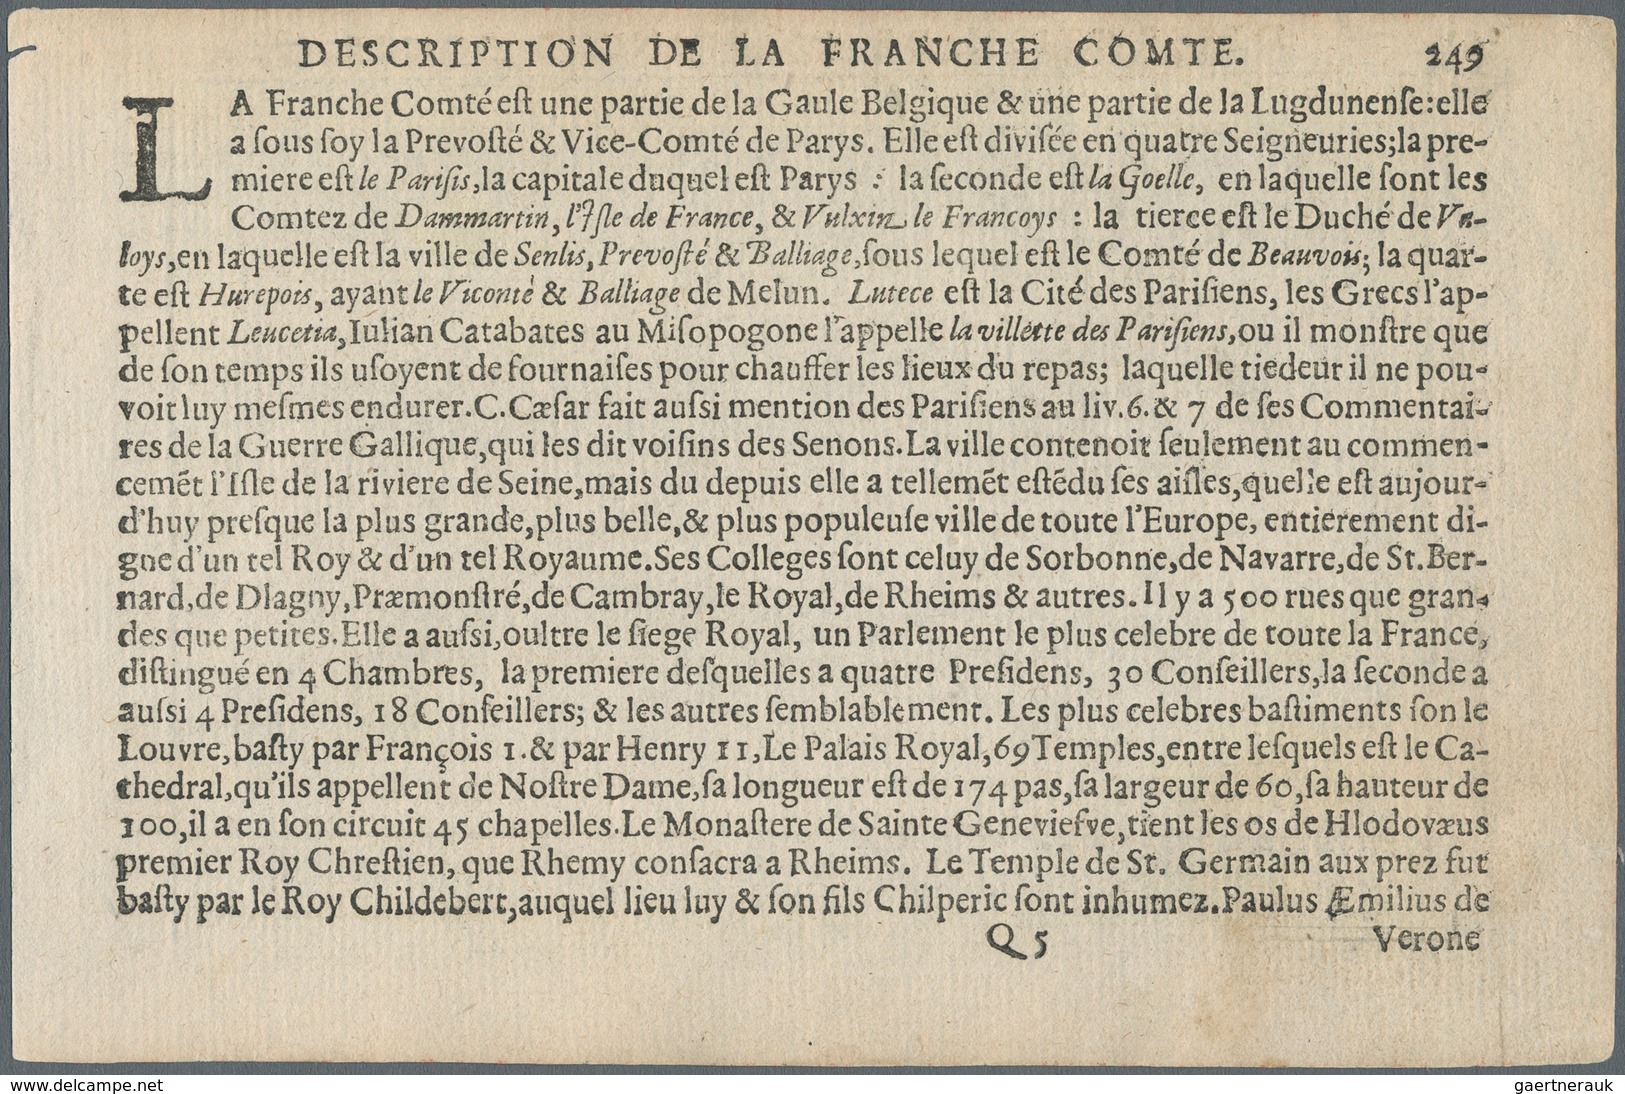 Landkarten Und Stiche: 1610. France Comitatus, Description De La Franche Comte. Attractive Small For - Geography